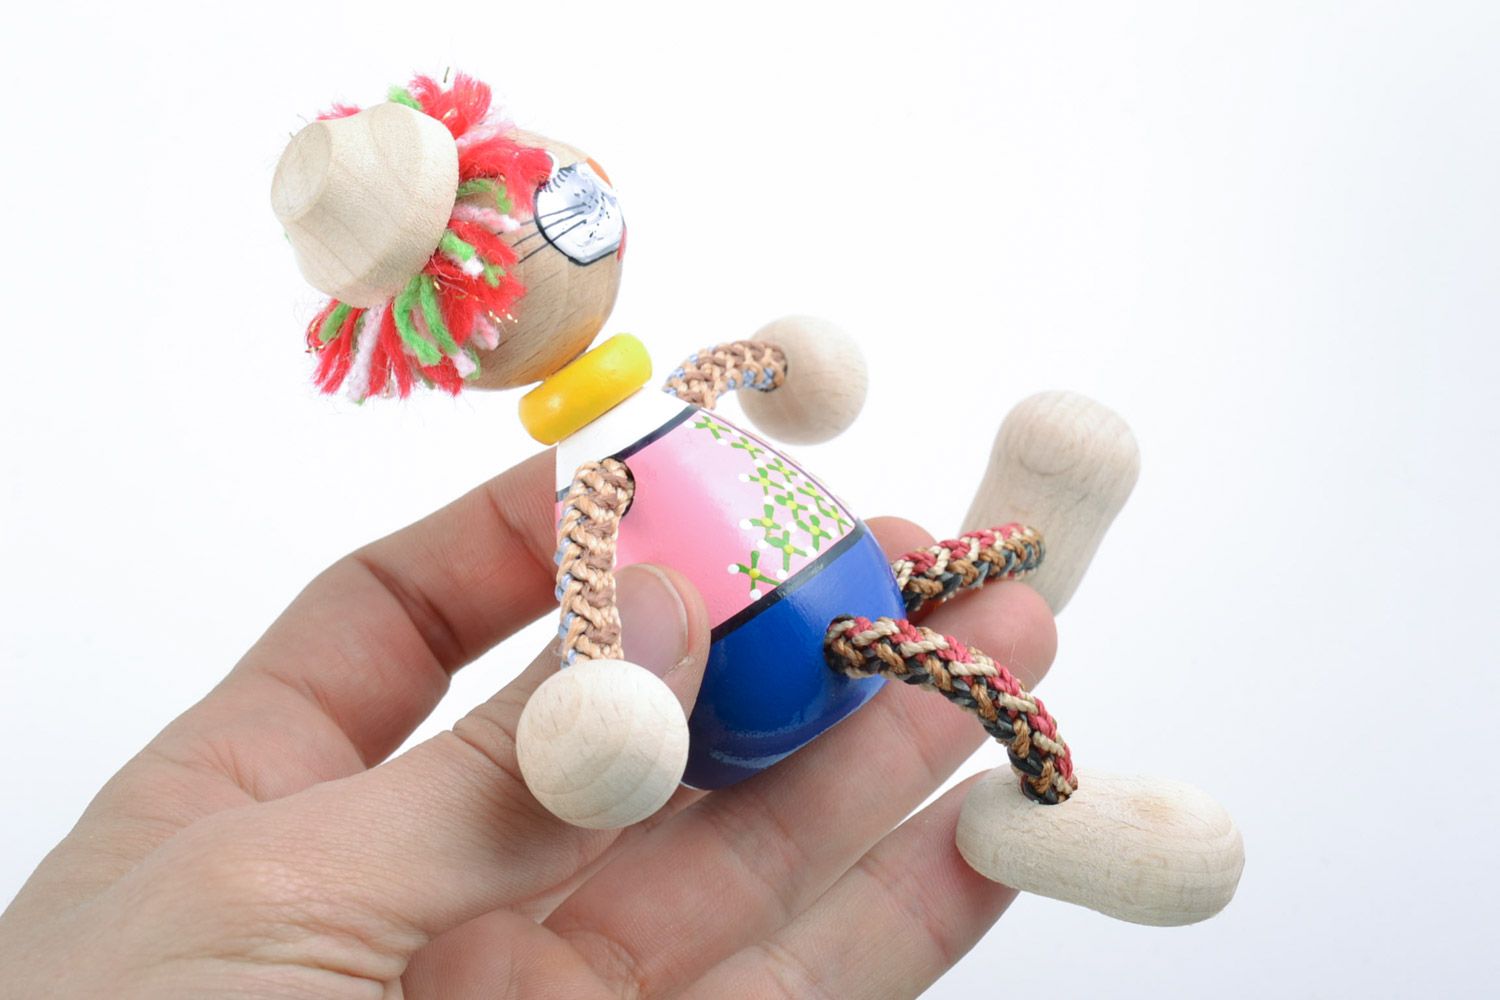 Holz Spielzeug Kater mit Farben bemalt grell Handarbeit Geschenk für Kinder  foto 2